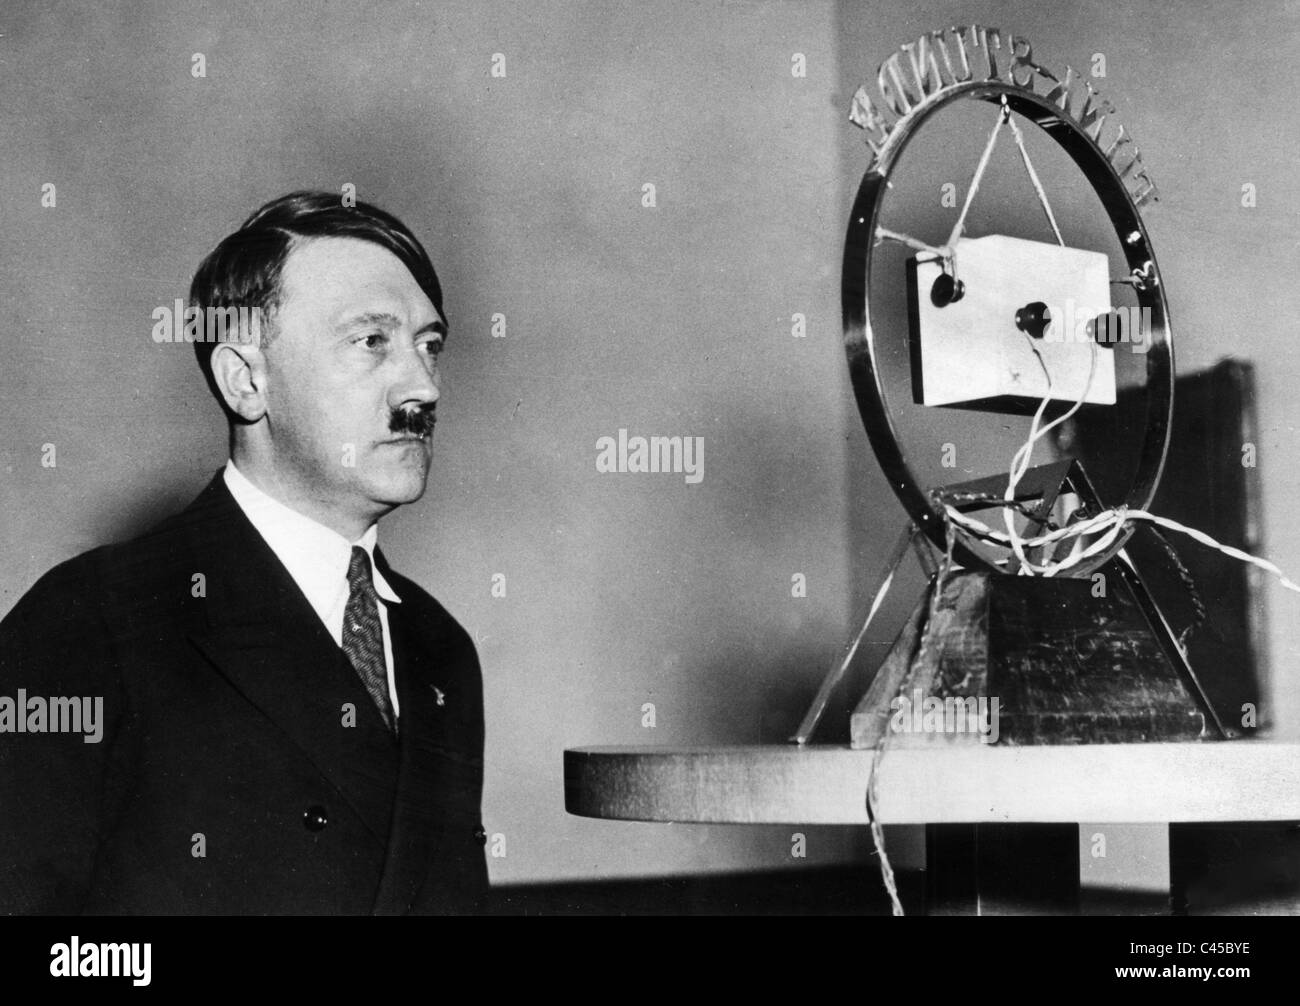 Premier discours d'Hitler à la radio, 1933 Banque D'Images